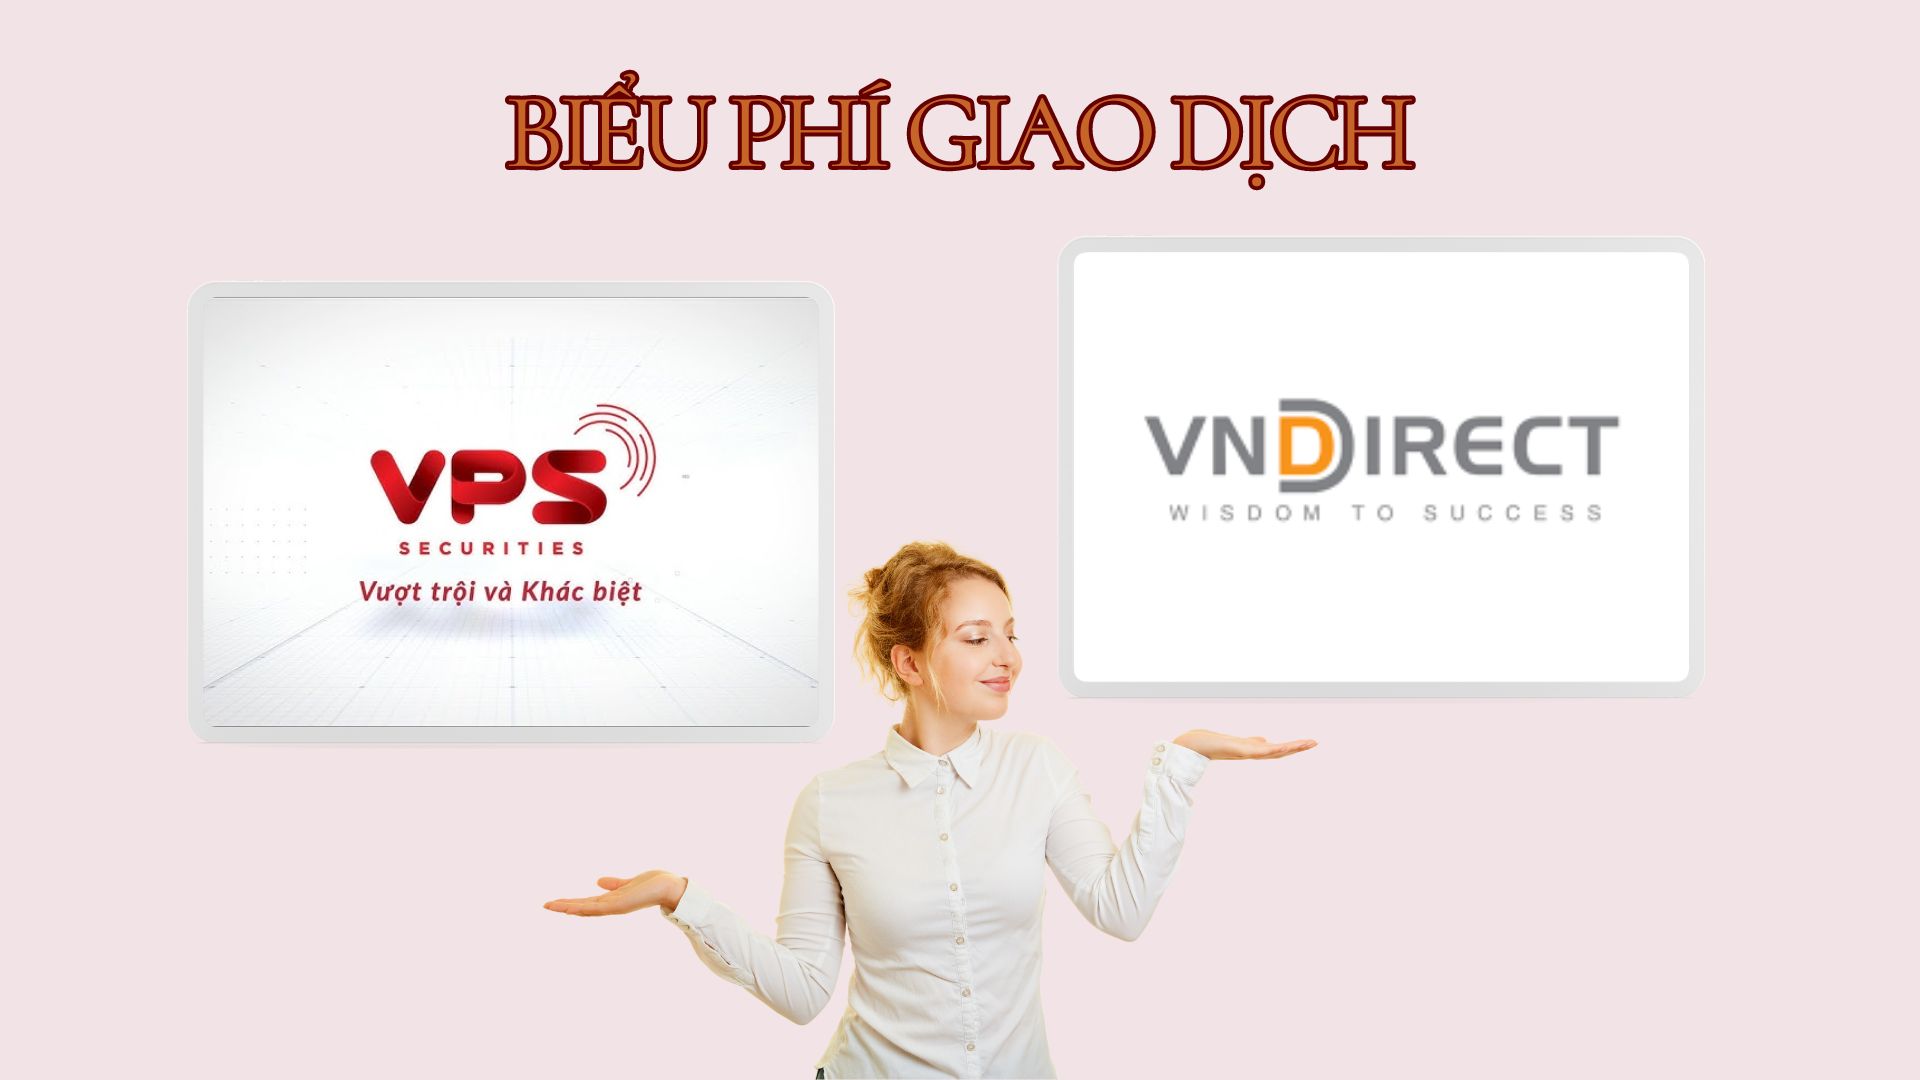 Phí giao dịch chứng khoán tại VPS và VNDIRECT có gì khác biệt?